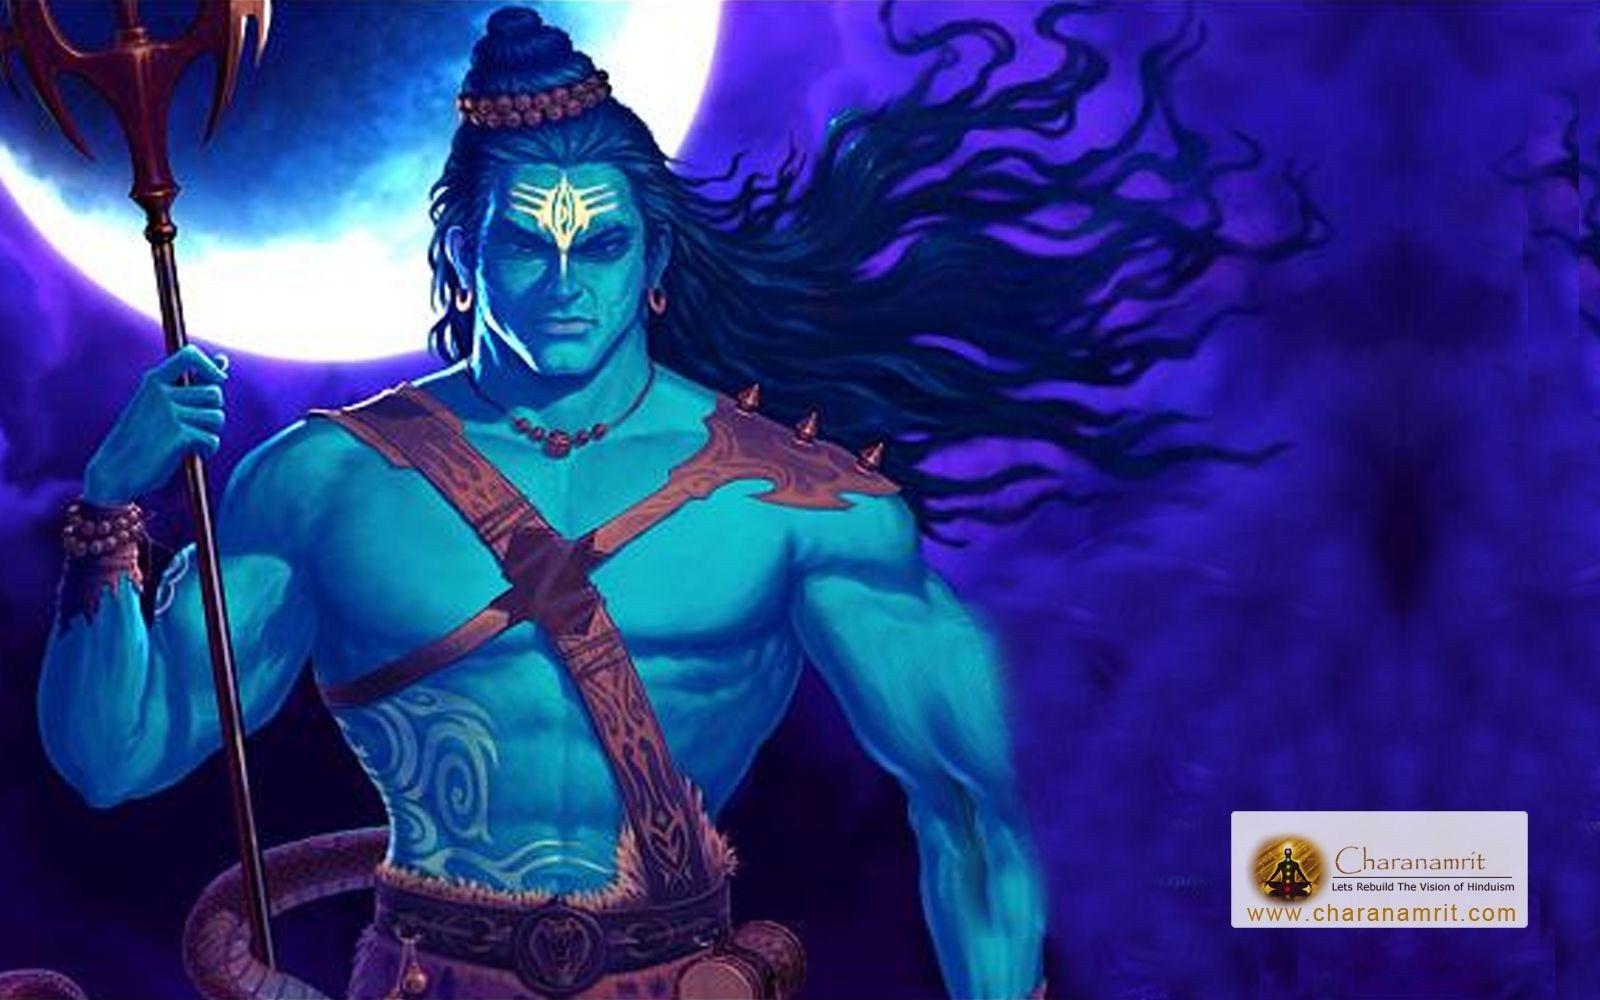 Tải xuống ứng dụng hình nền Shiva miễn phí 1600x1000 Apk cho Android - Angry Lord